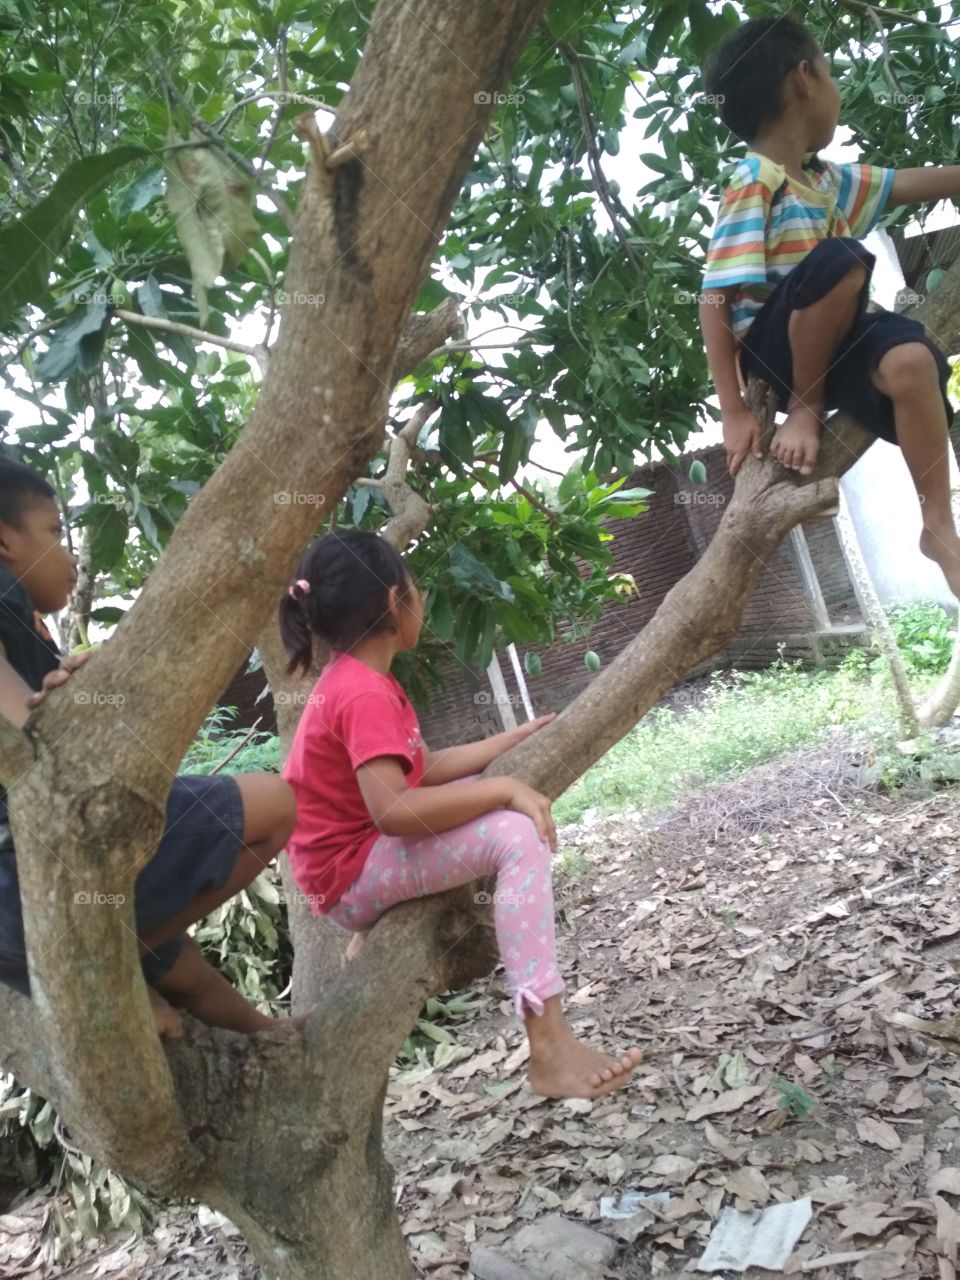 Kids on the tree